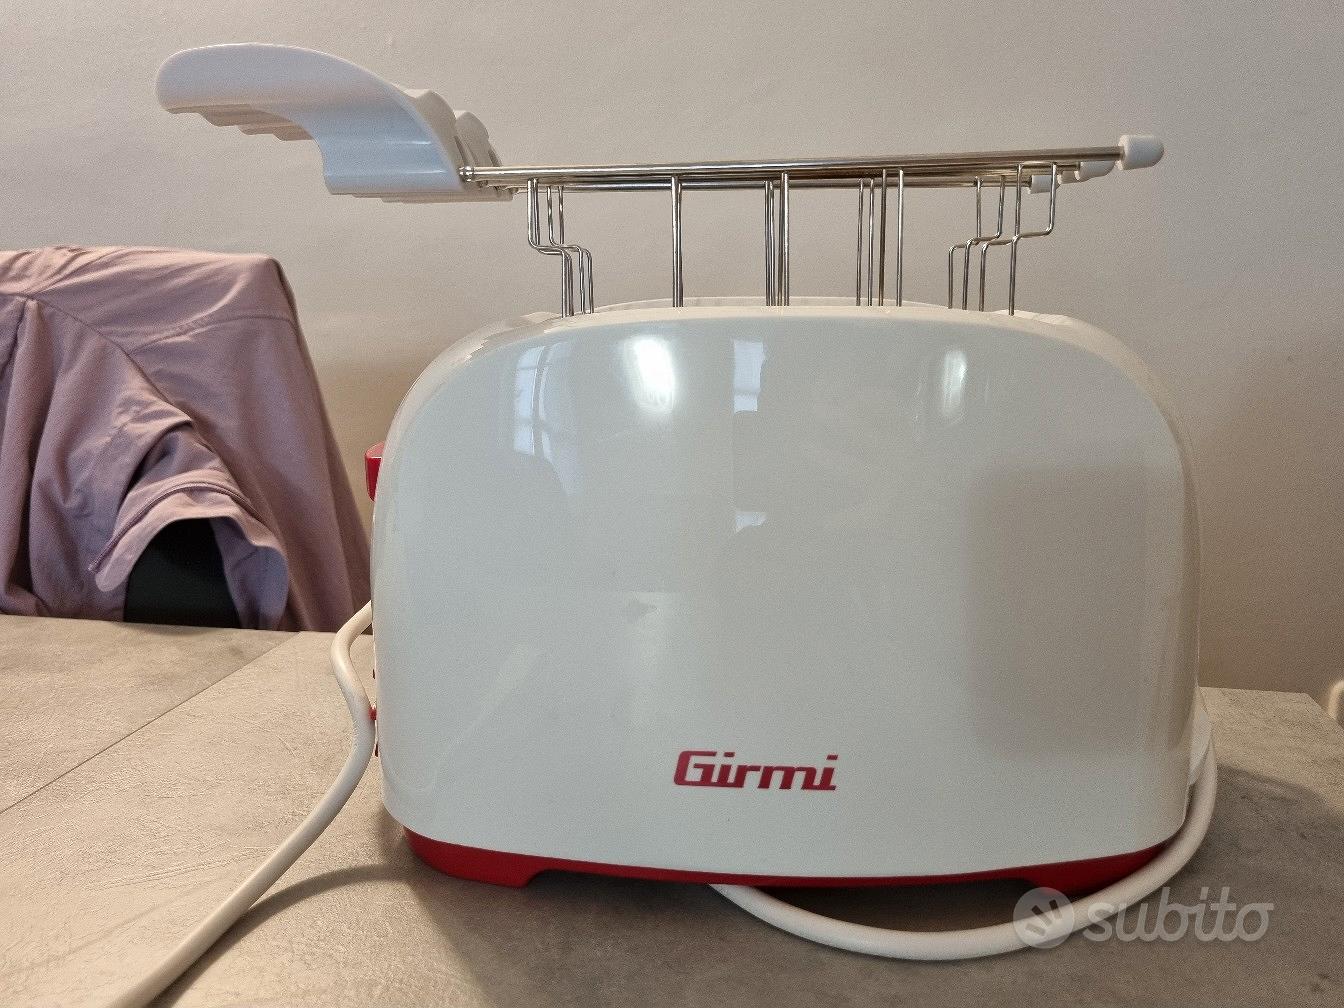 Tostapane Girmi - Elettrodomestici In vendita a Torino